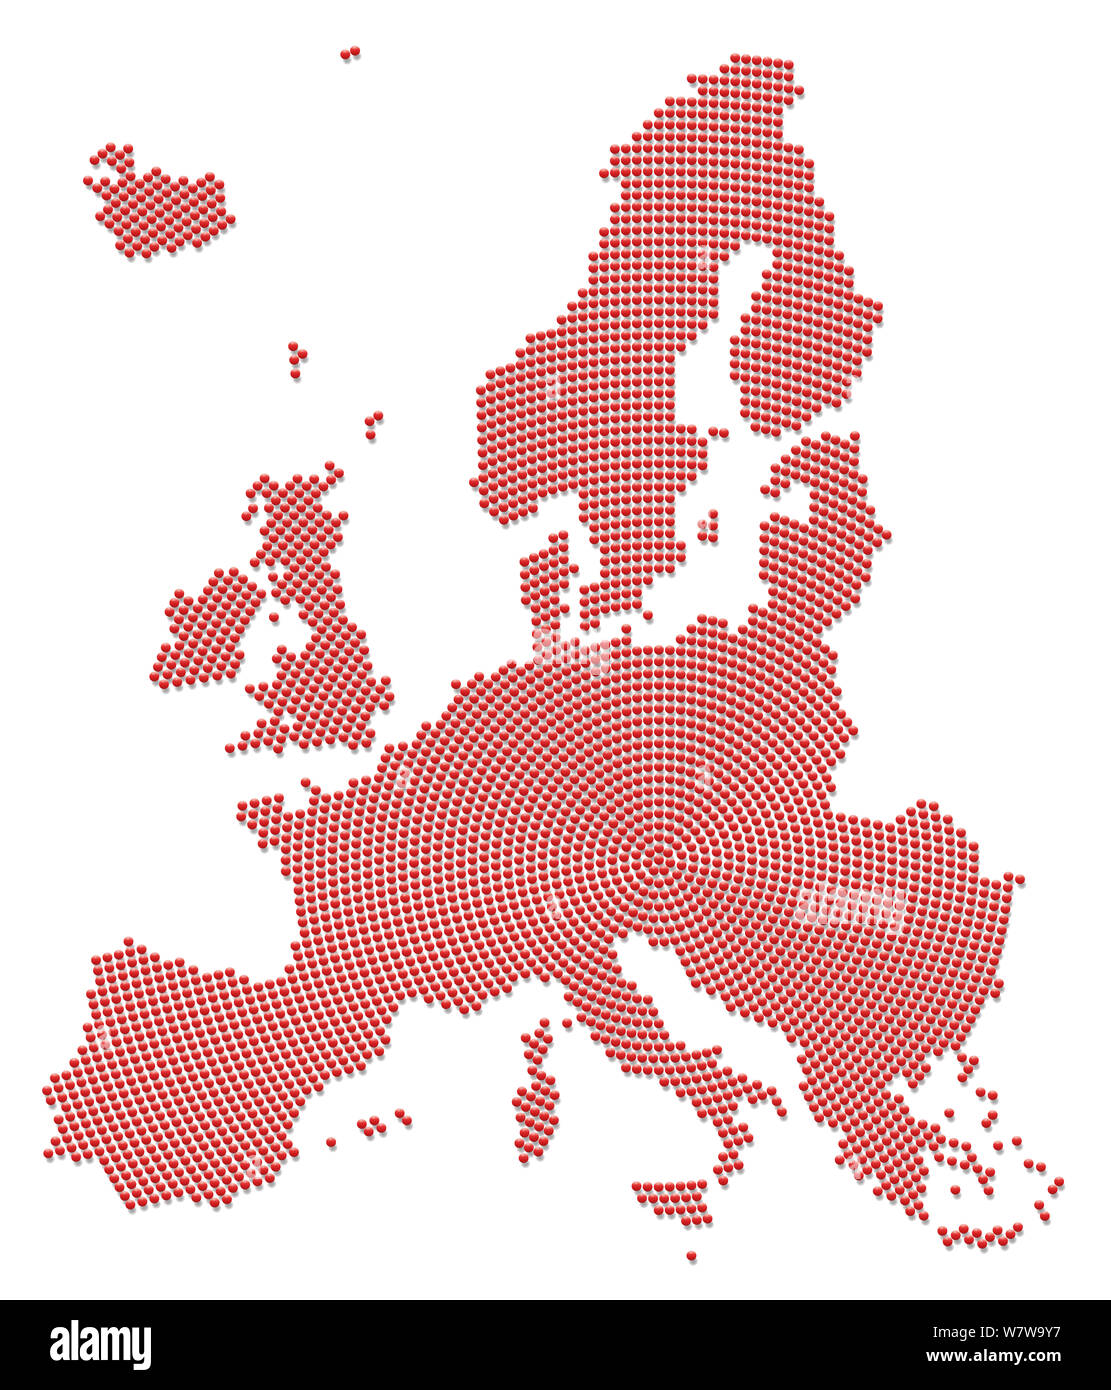 Europa Karte mit vielen kleinen roten Kugeln - Illustration, radial auf weißem Hintergrund. Stockfoto